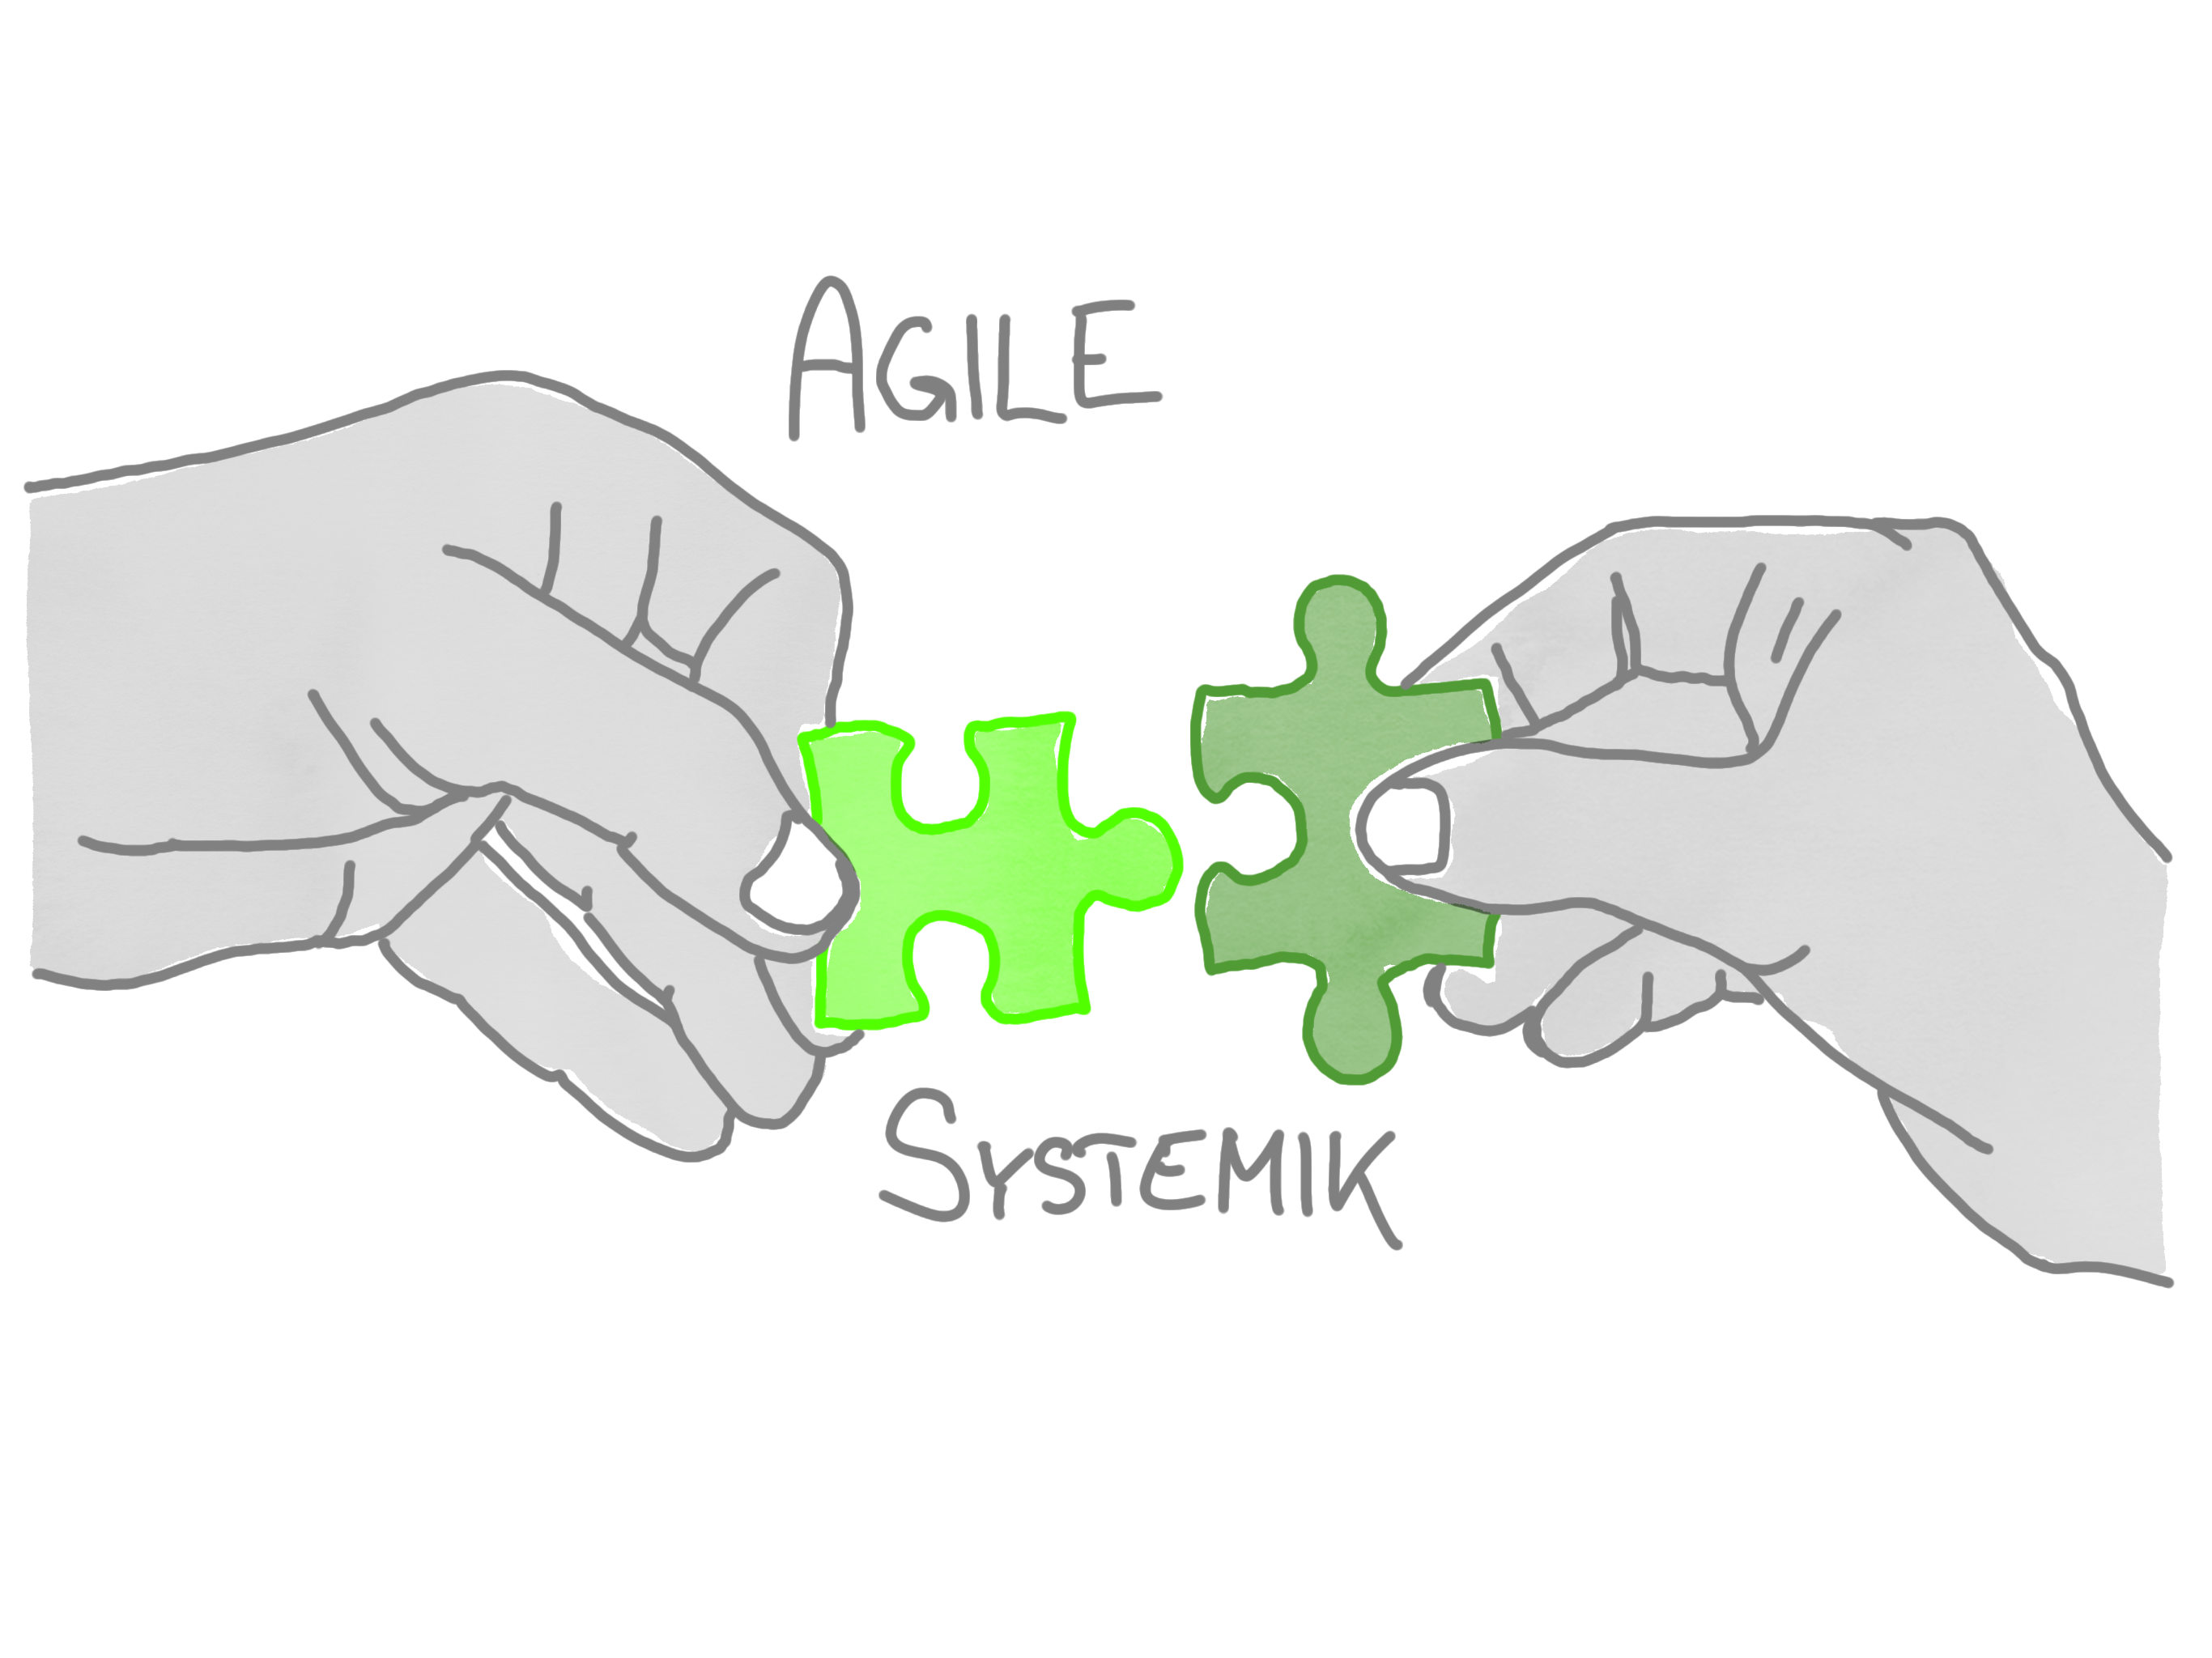 Agile Systemik - xm-institute - Dr. Oliver Mack